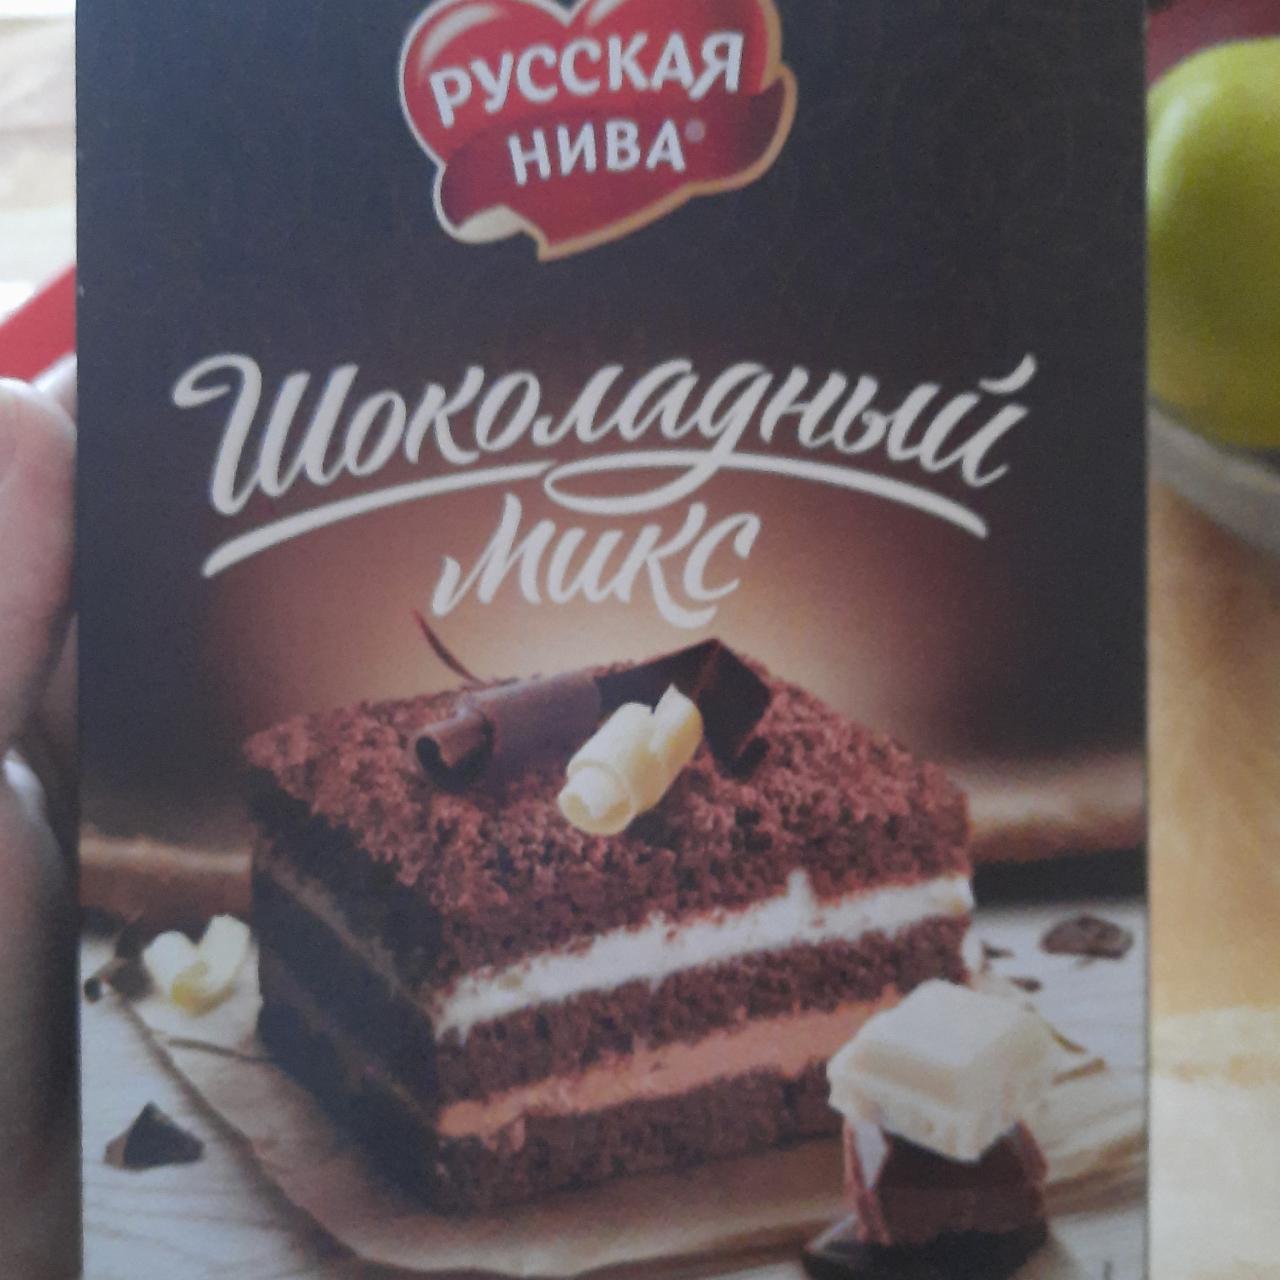 Фото - торт бисквитный шоколадный микс Русская Нива